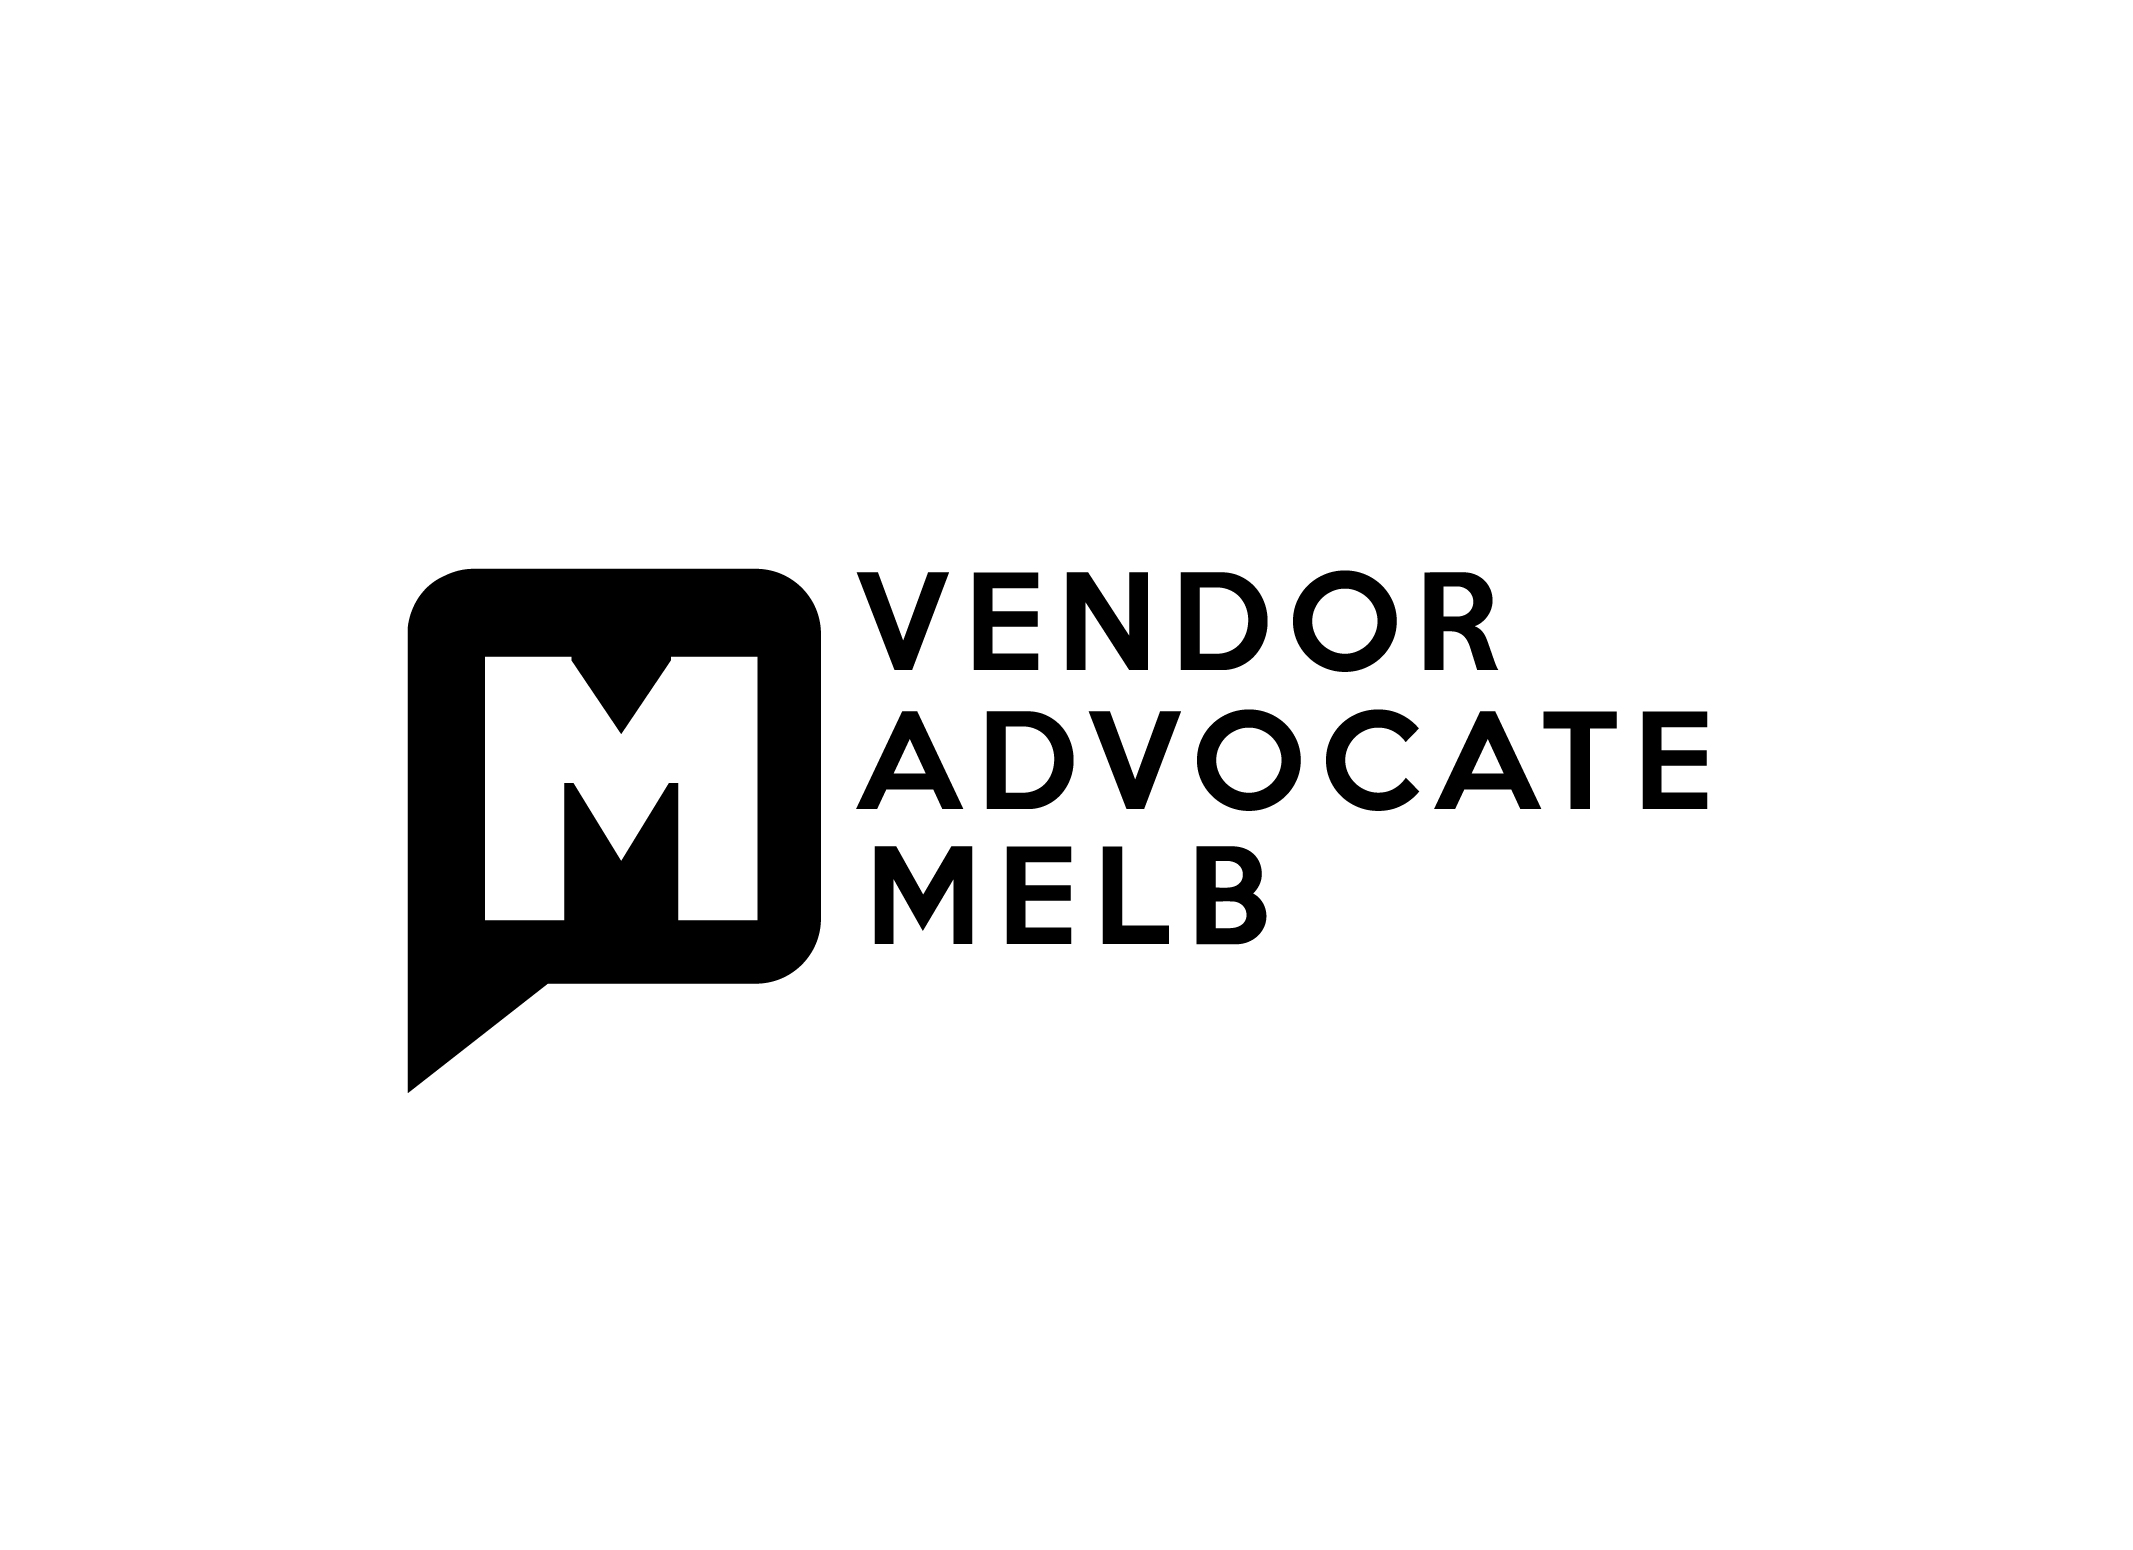 Vendor Advocate Melb